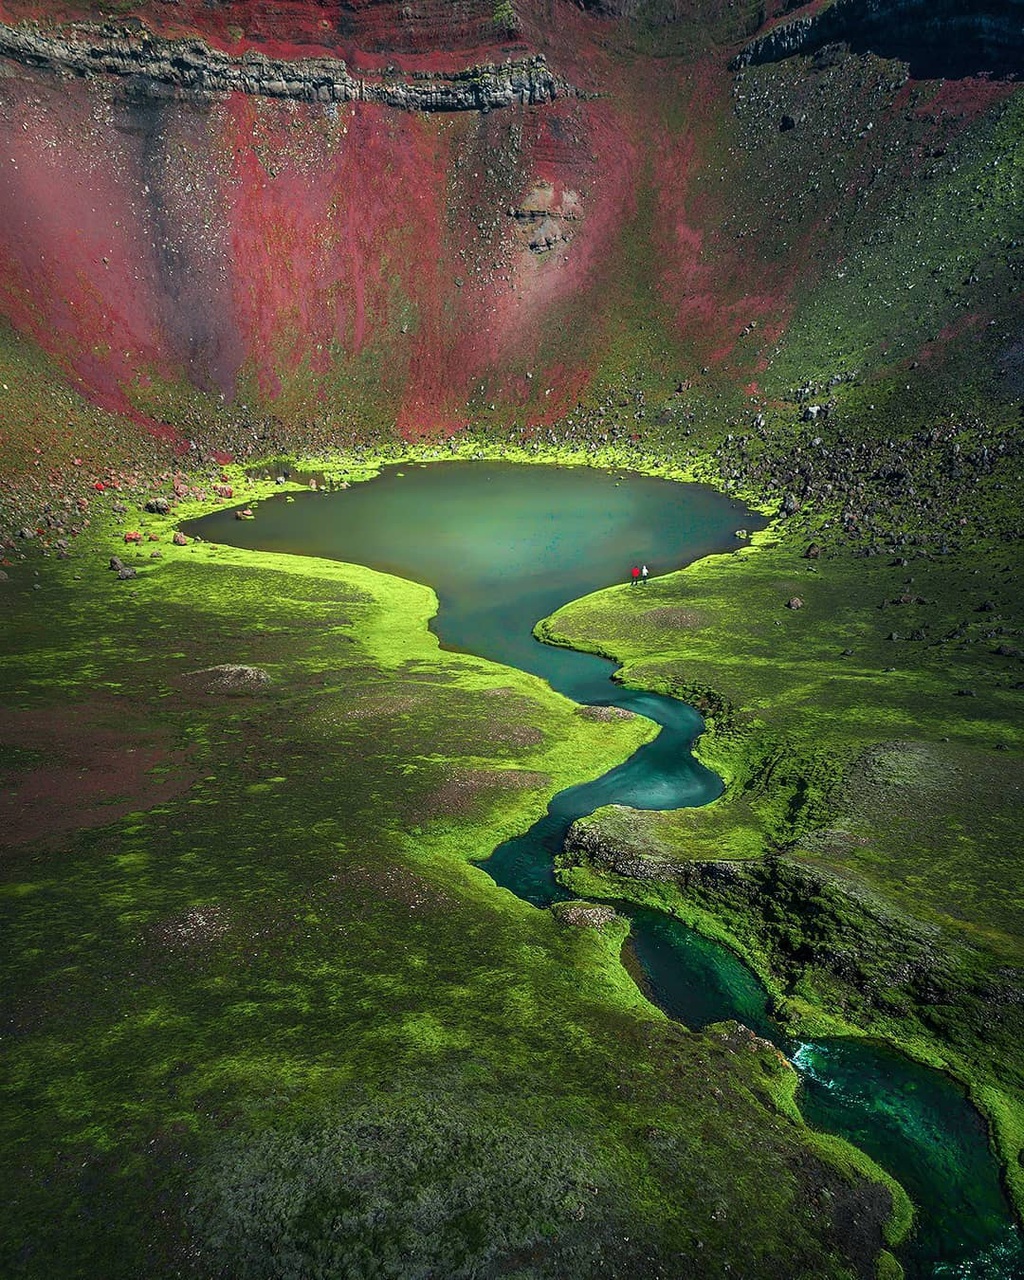 Iceland hóa thước phim viễn tưởng với những miền đất màu xanh